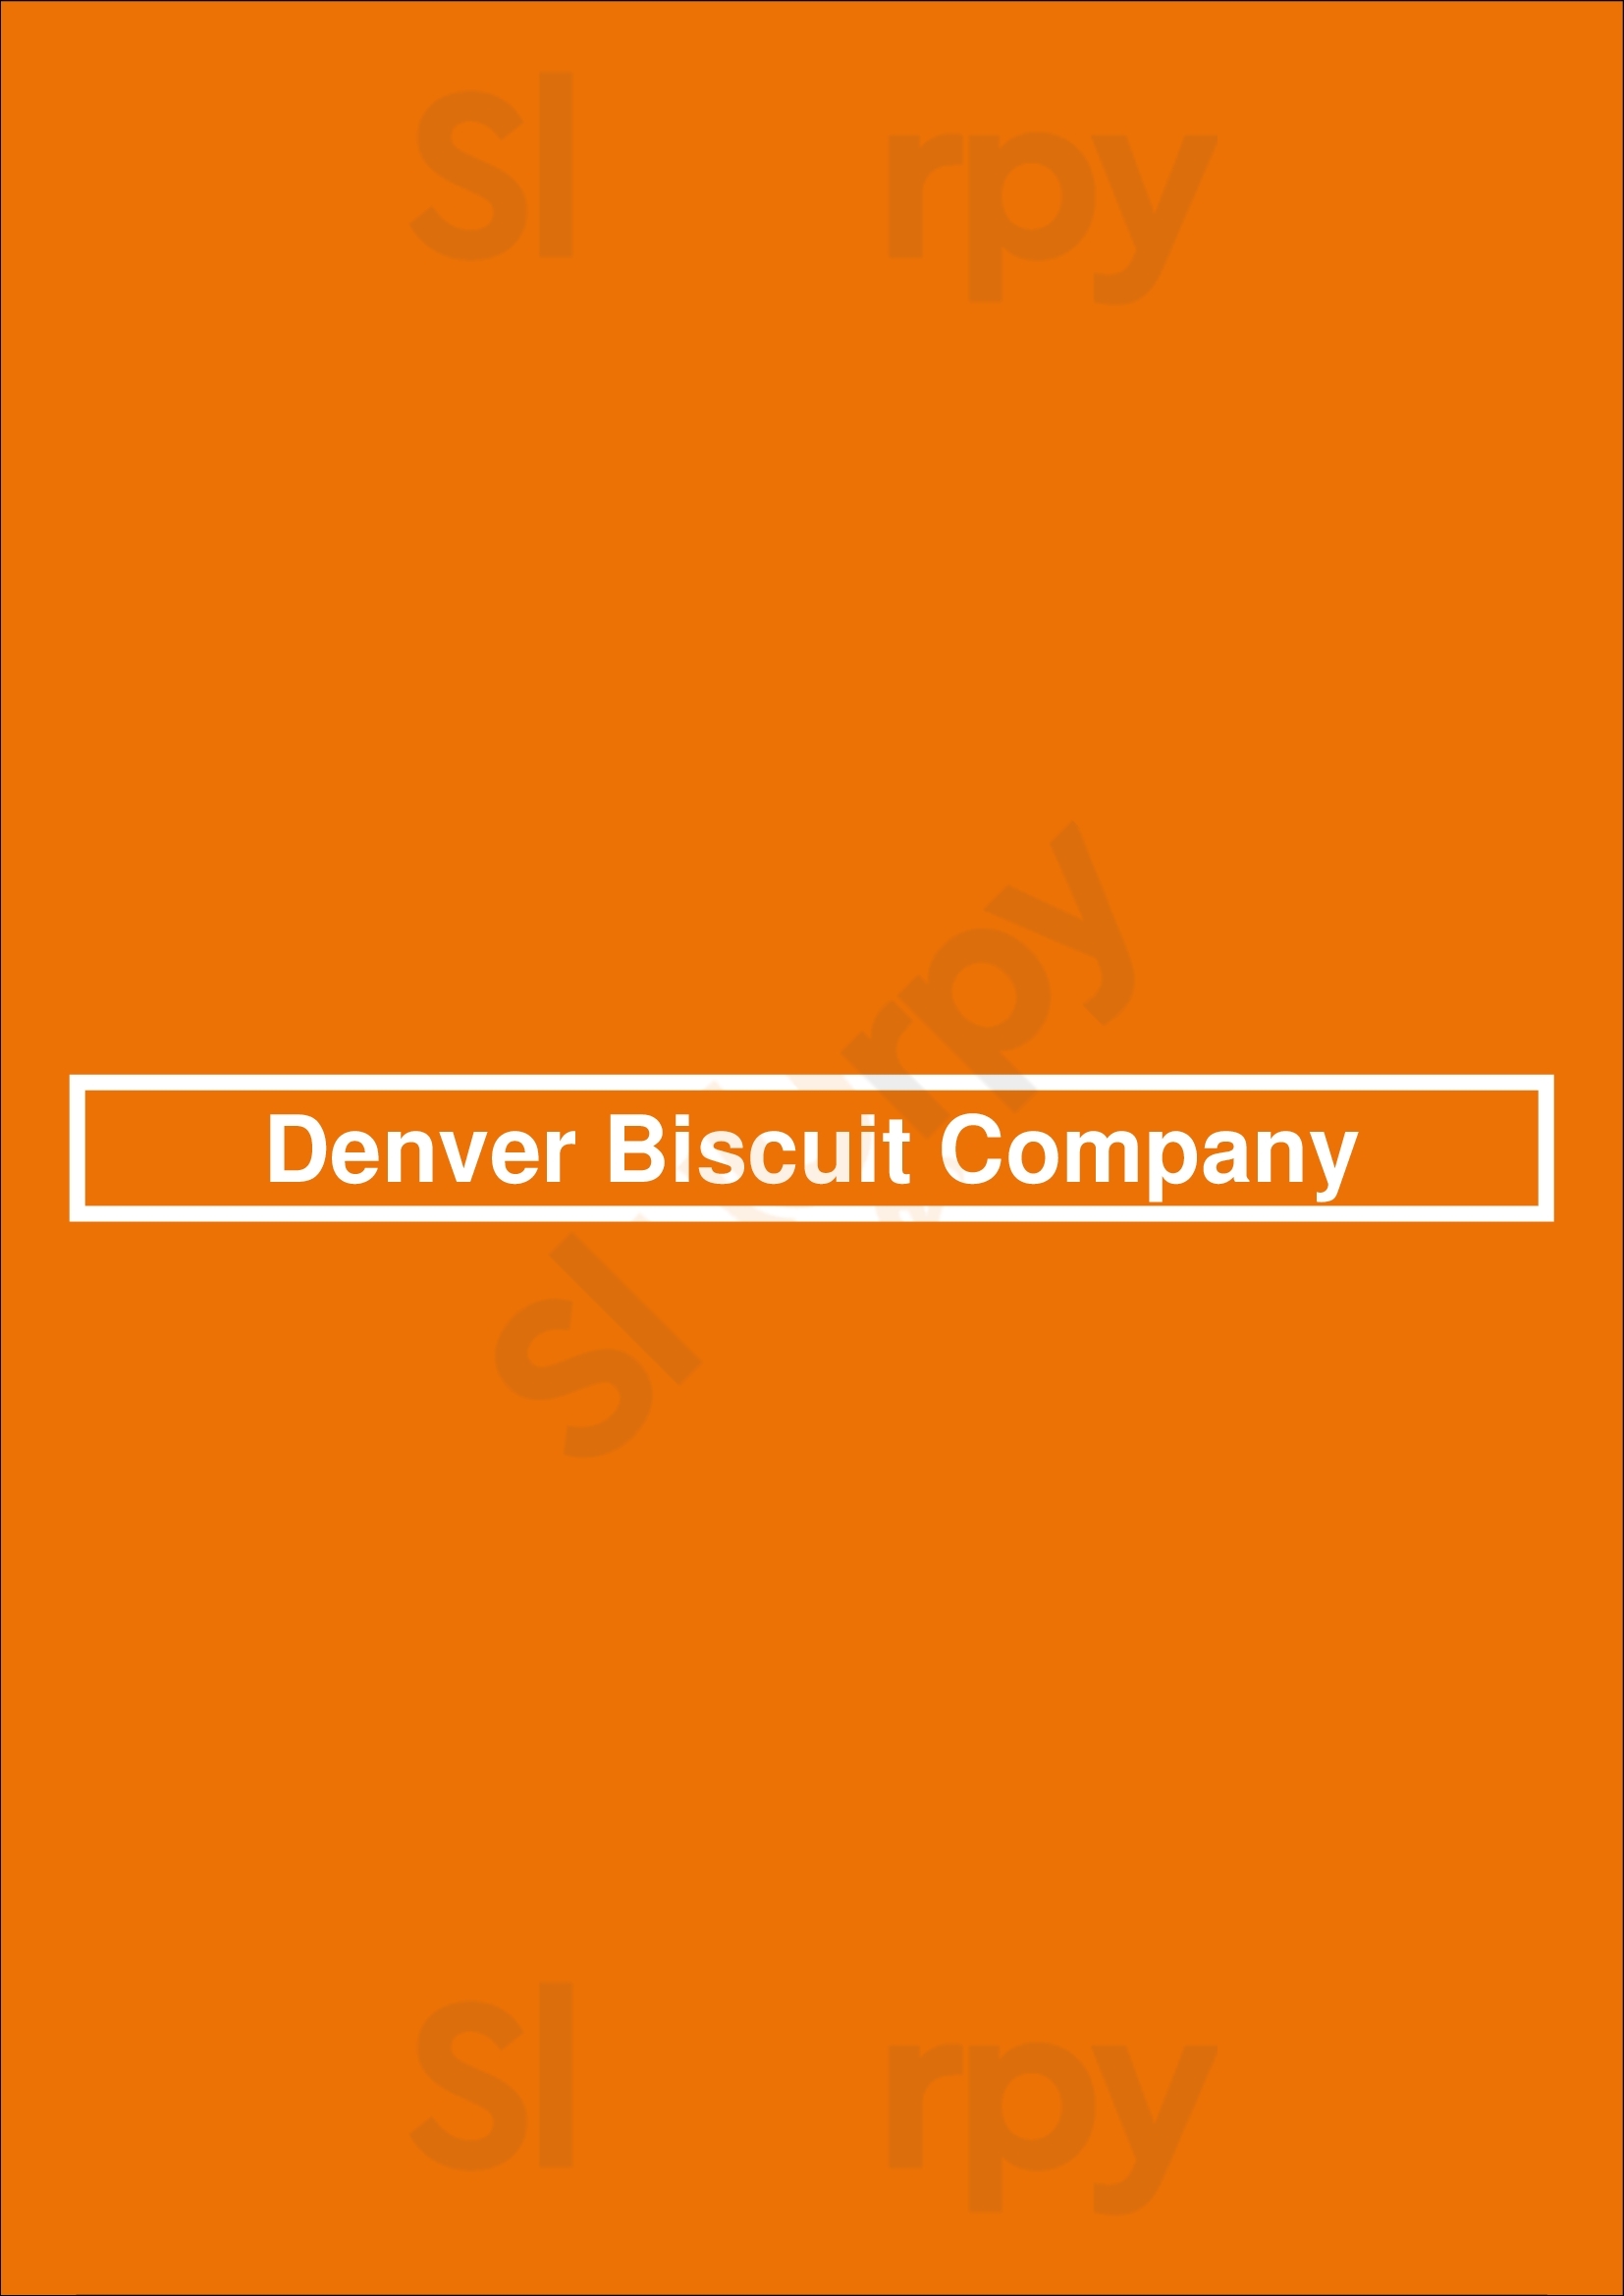 Denver Biscuit Company Denver Menu - 1